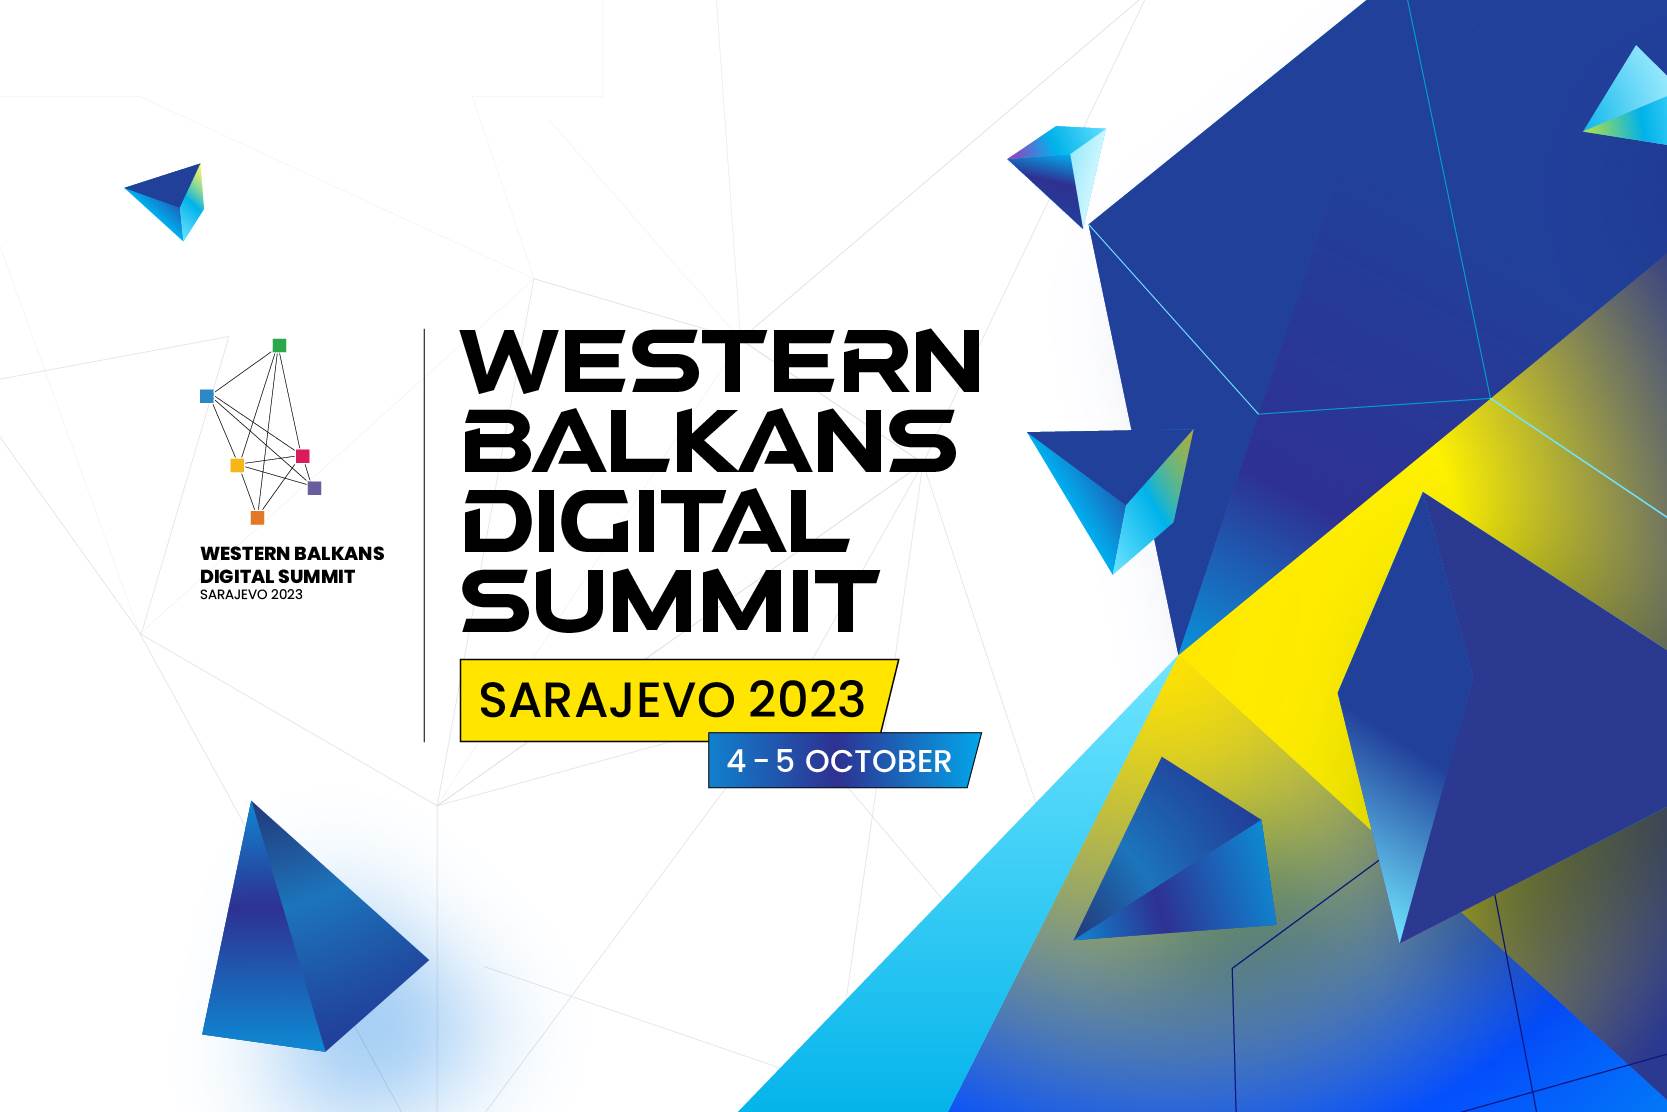  Šesti digitalni samit zapadnog Balkana mtel 